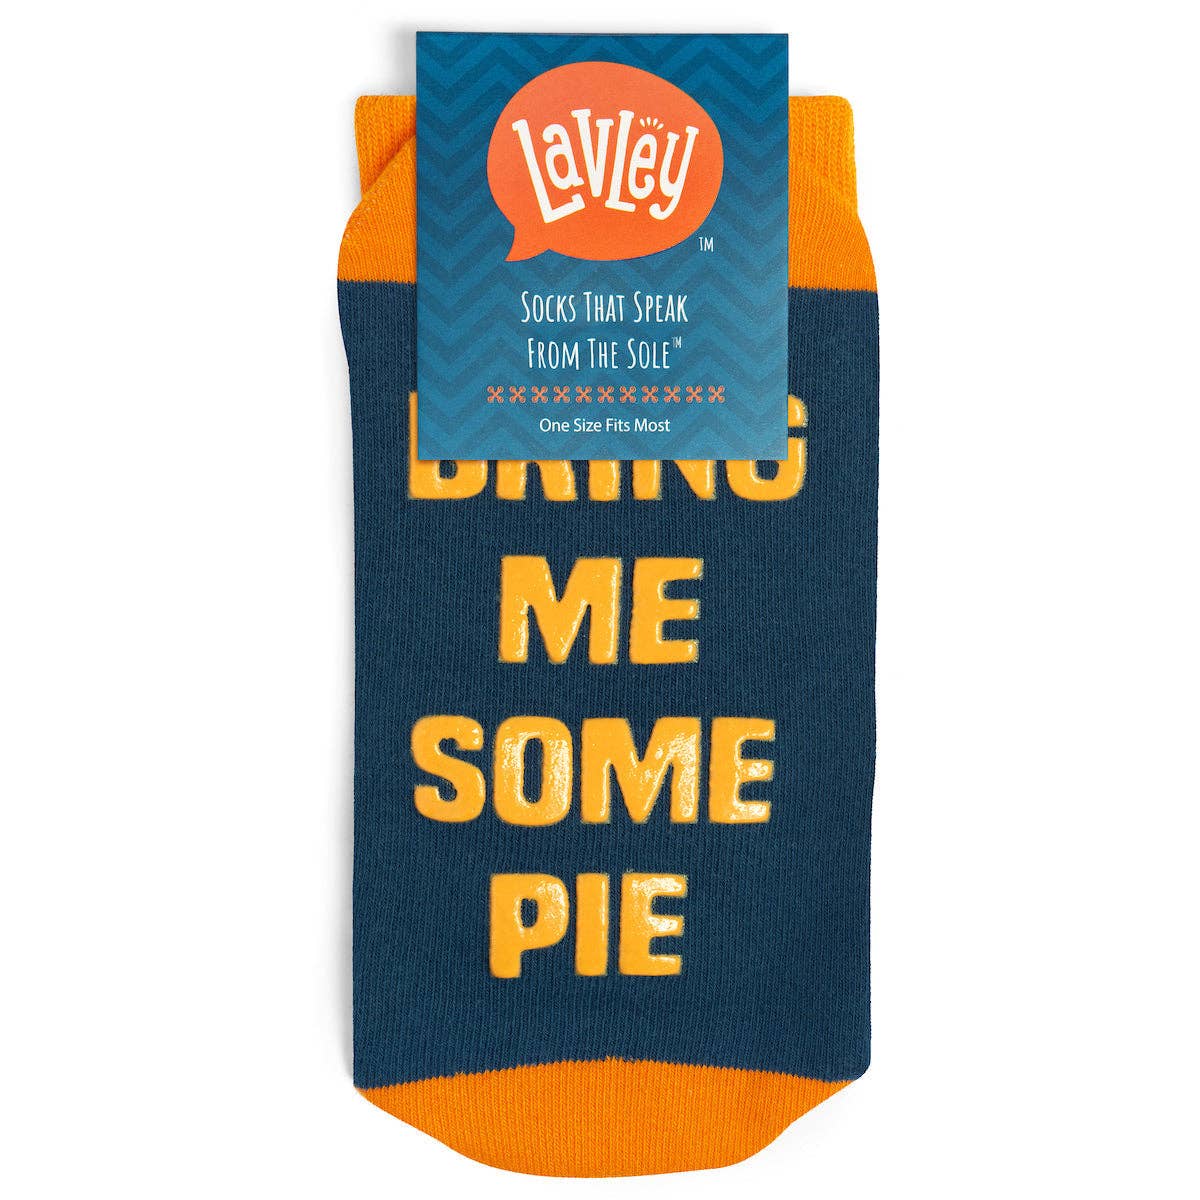 Lavley - Bring Me Pie Socks